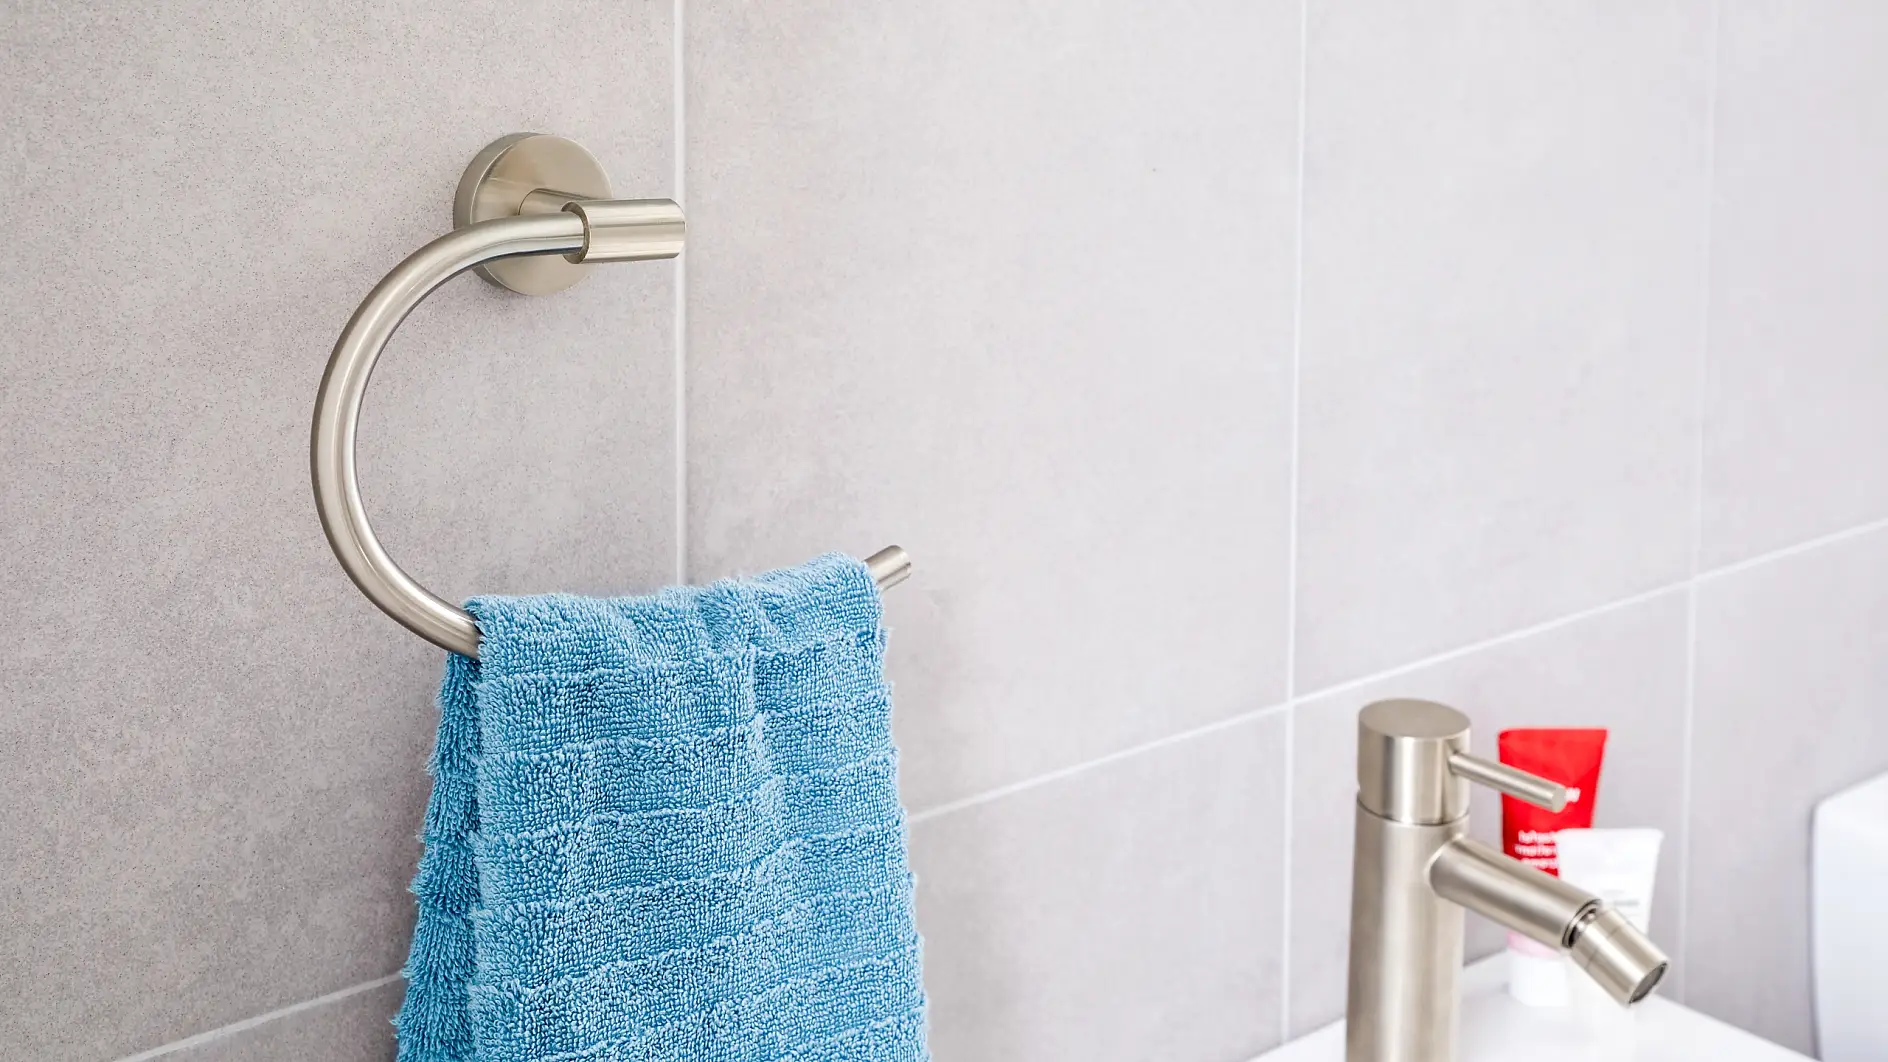 Edel design ontmoet praktisch gebruik om je handdoeken bij je wastafel te houden.